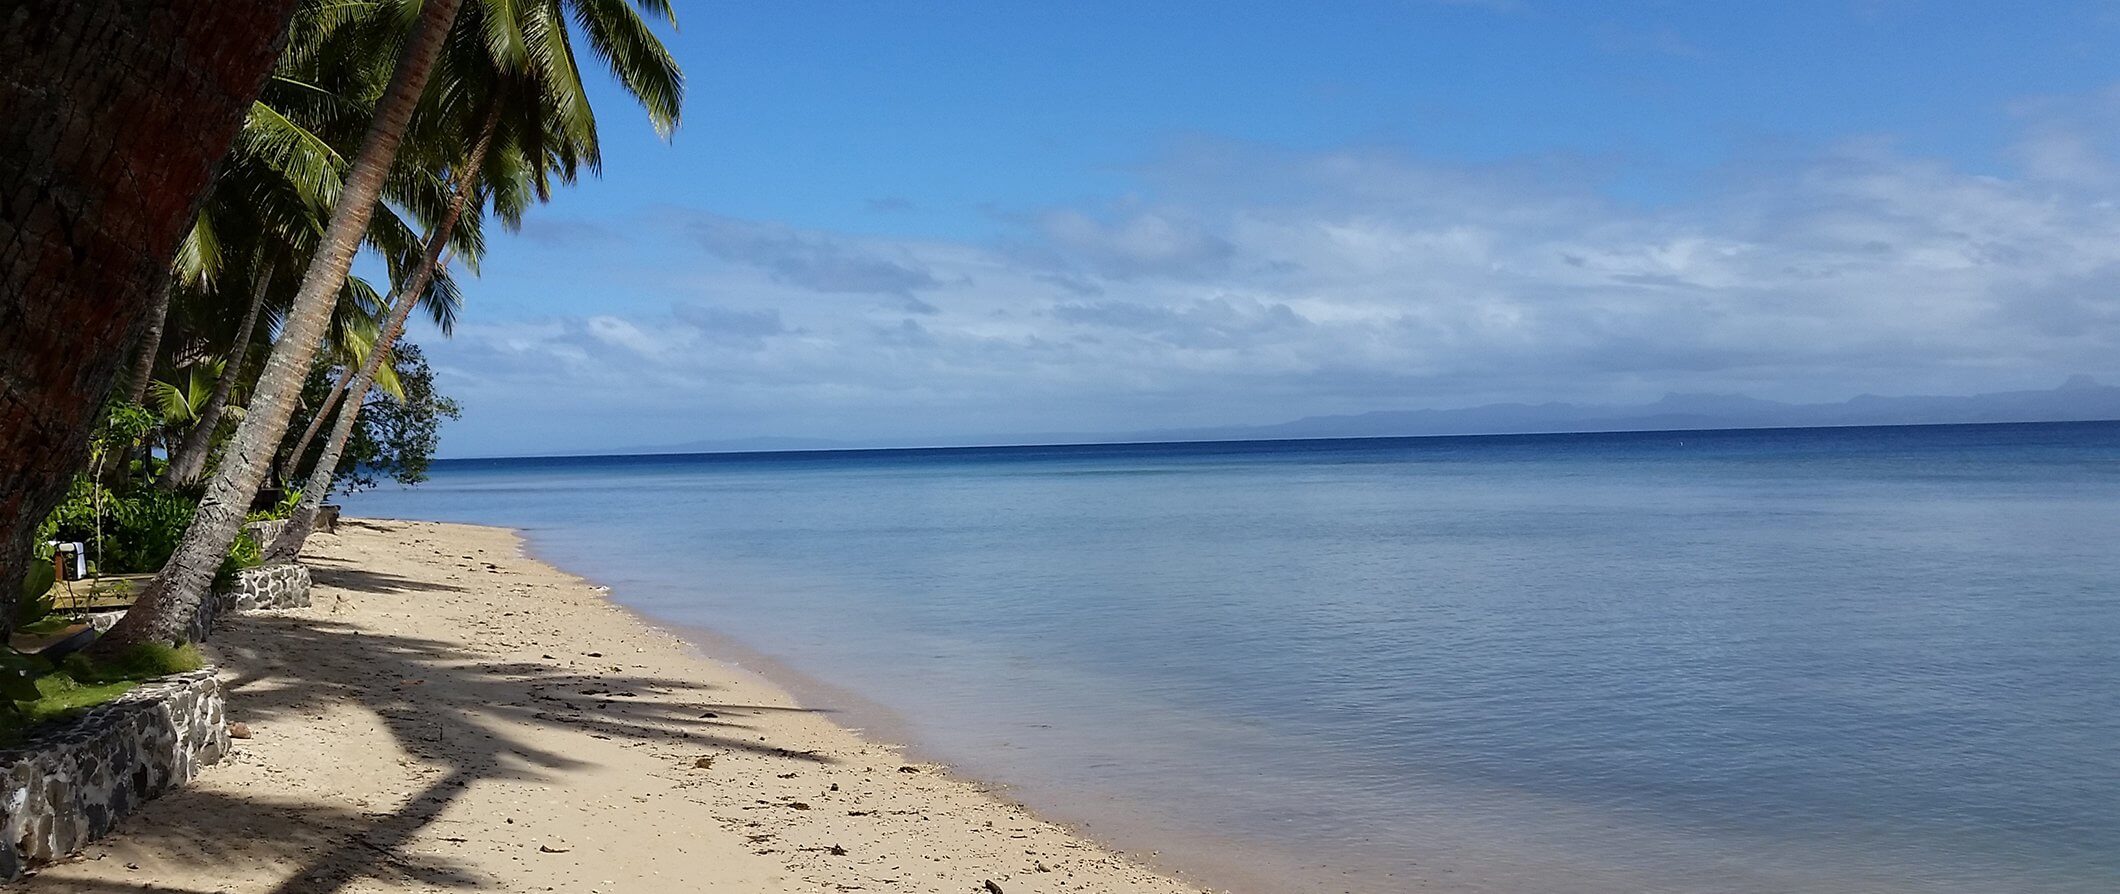 a beach in fiji